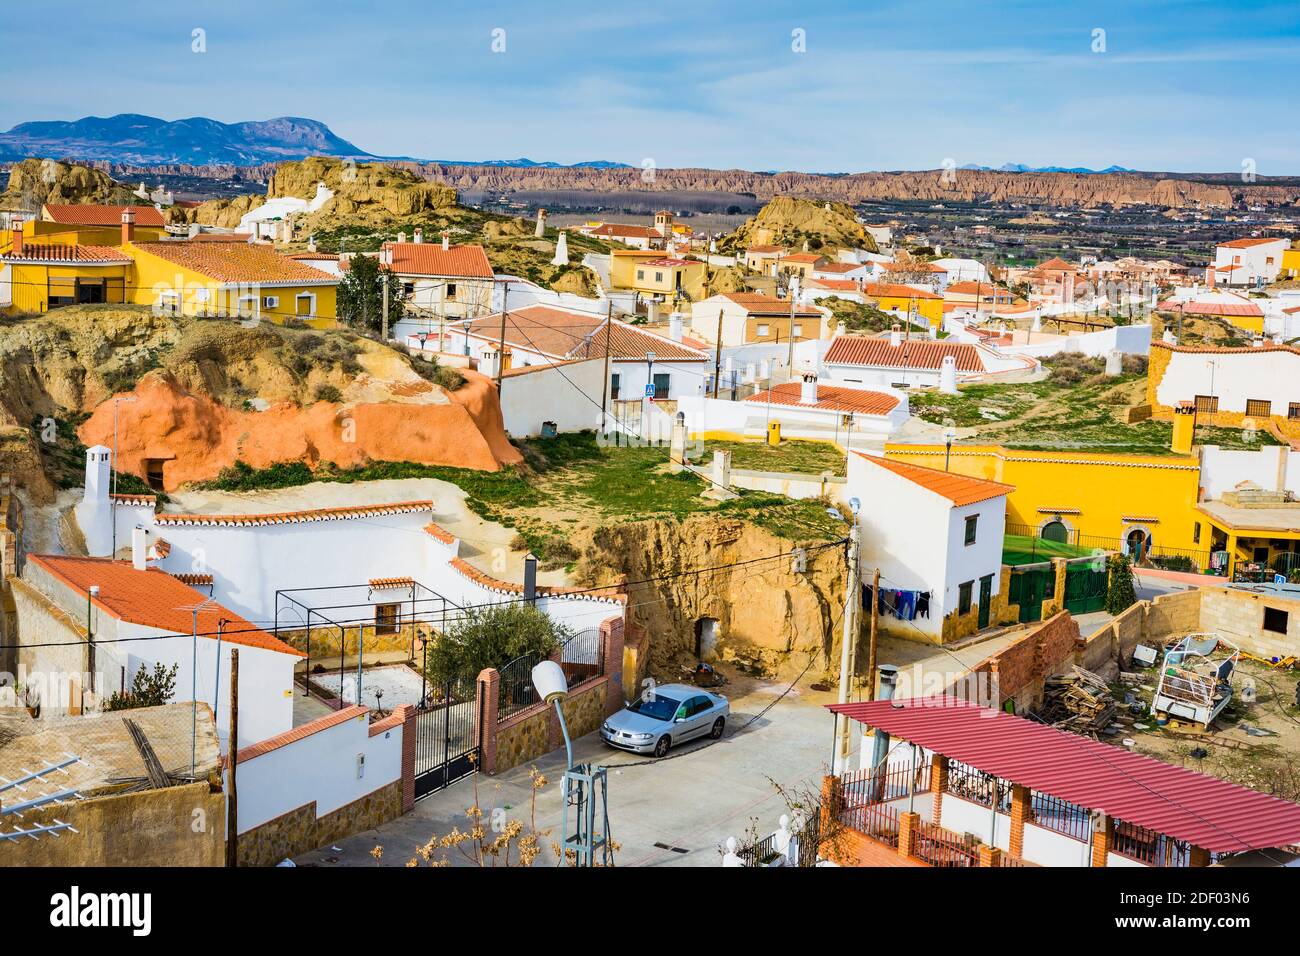 Barrio de las Cuevas - Cave houses district. Guadix, Granada, Andalucía, Spain, Europe Stock Photo